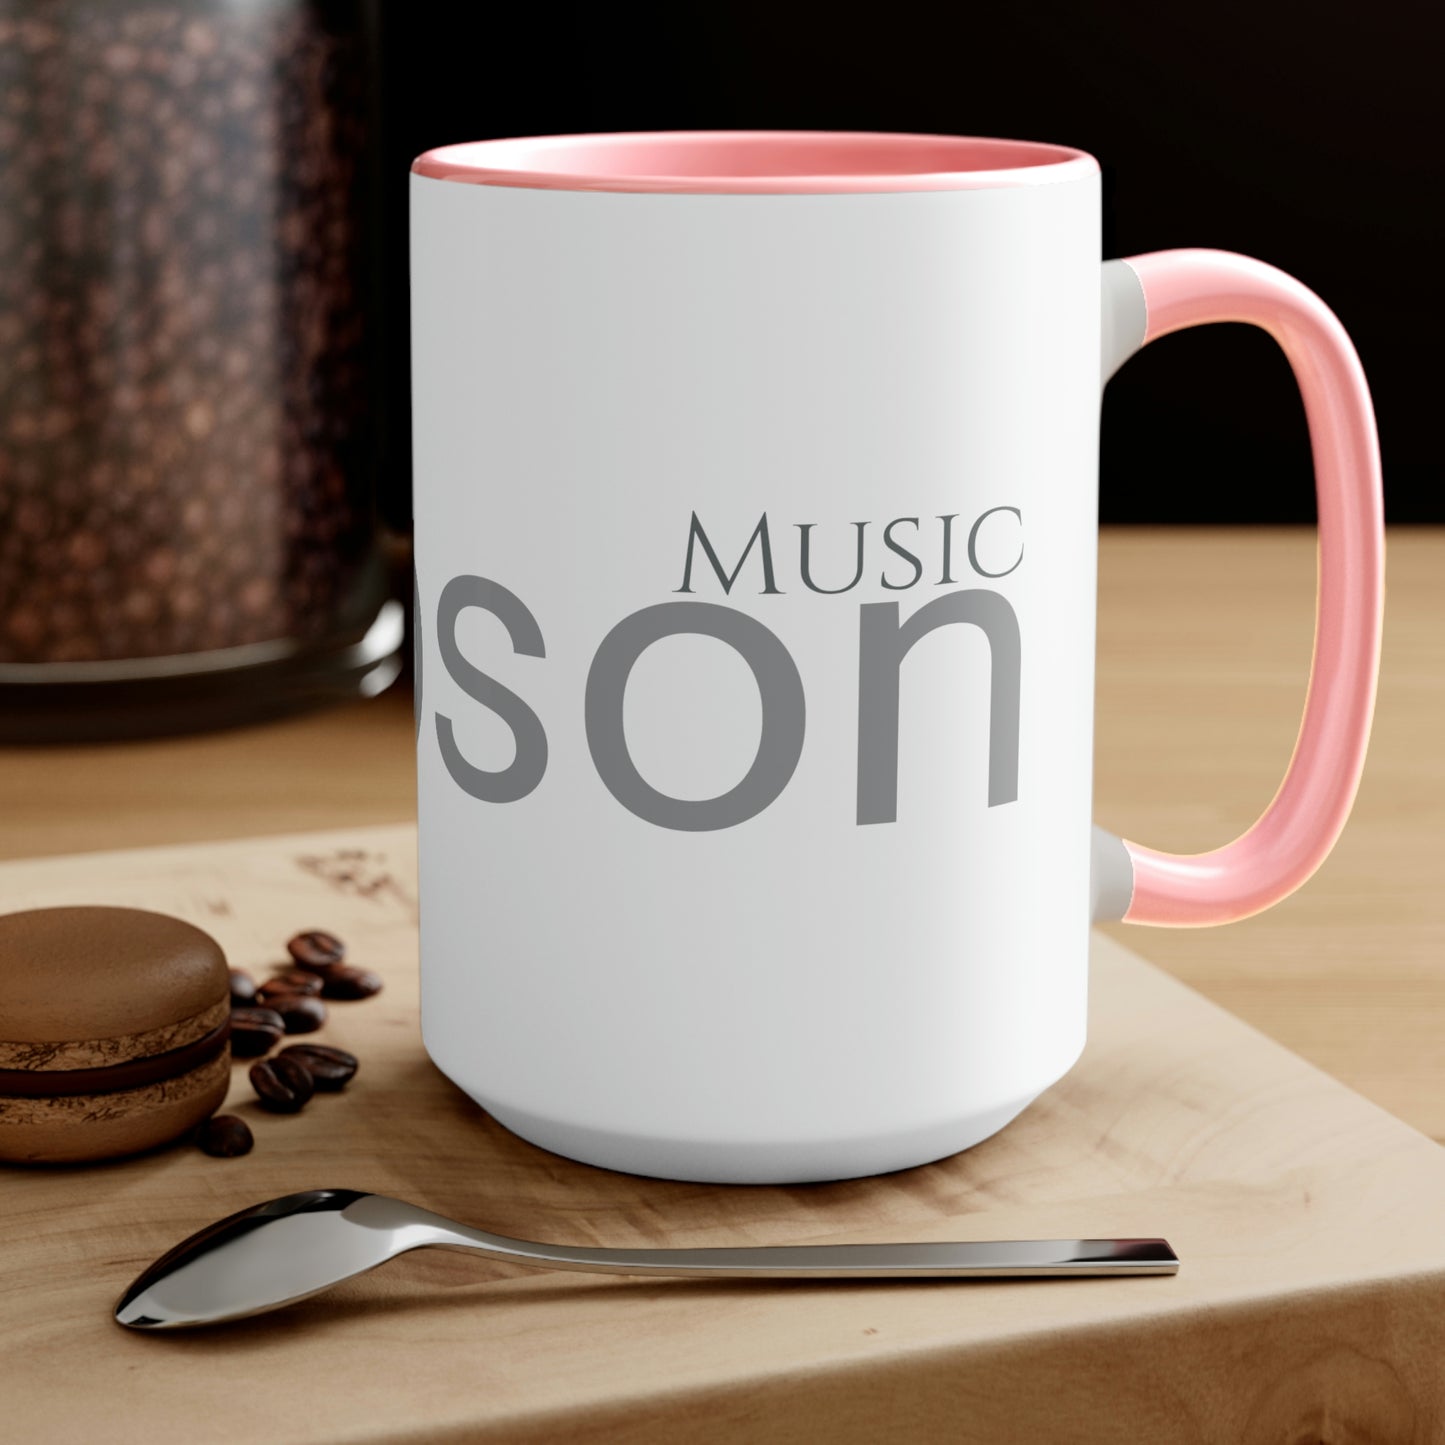 DM Two-Tone Coffee Mug